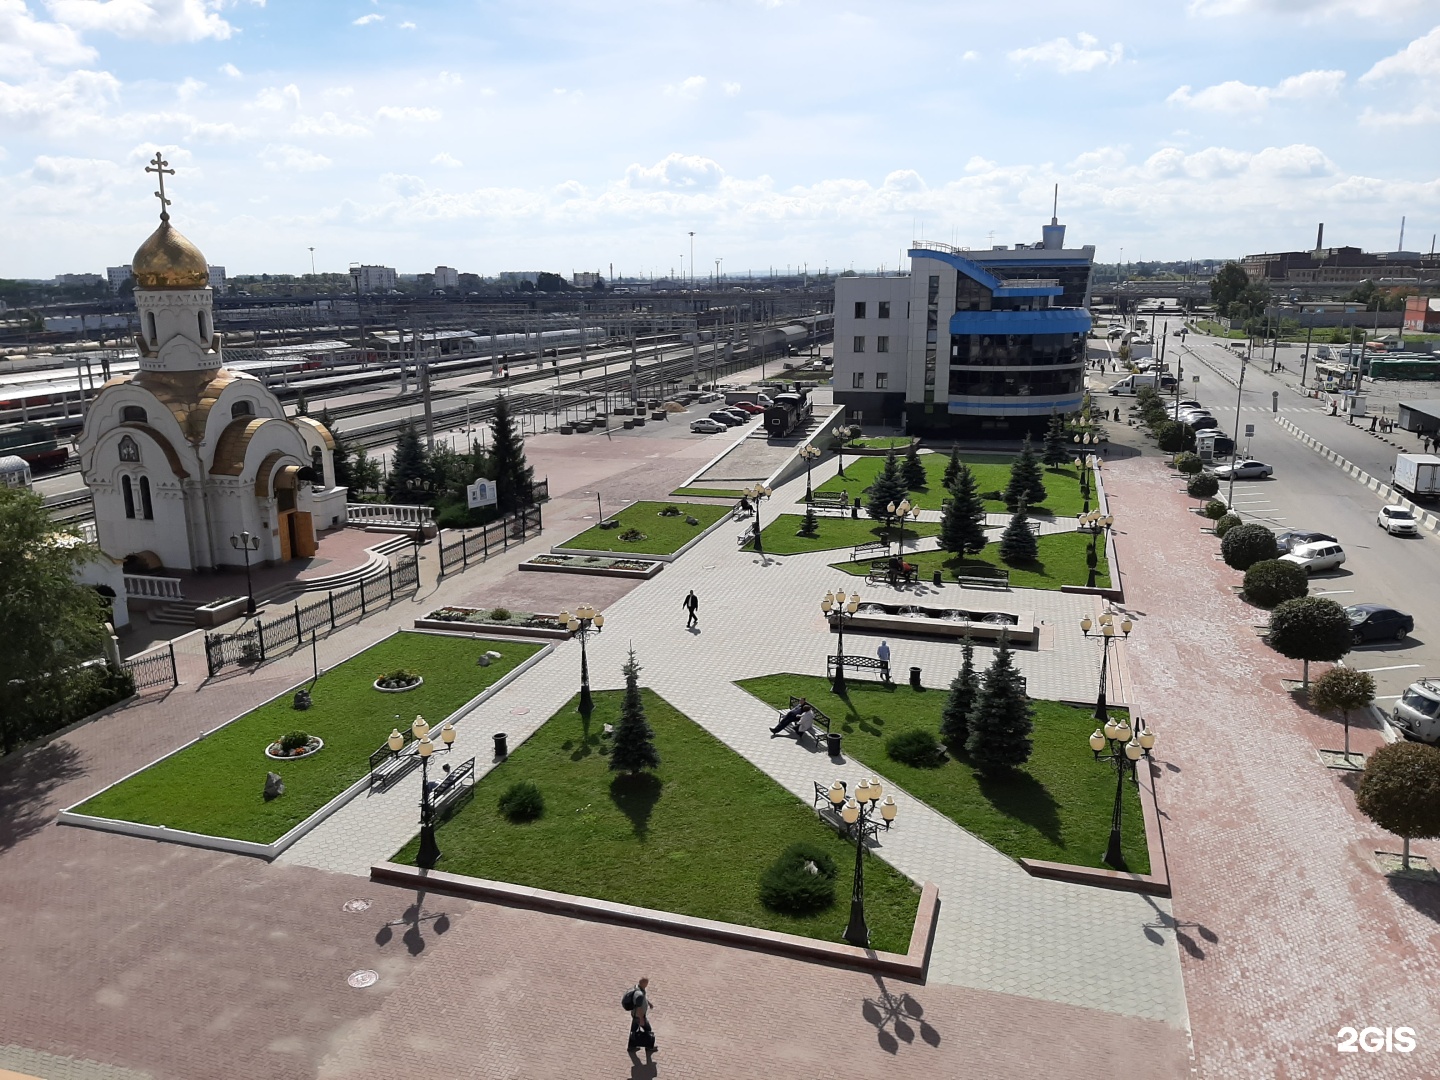 железнодорожный вокзал в челябинске